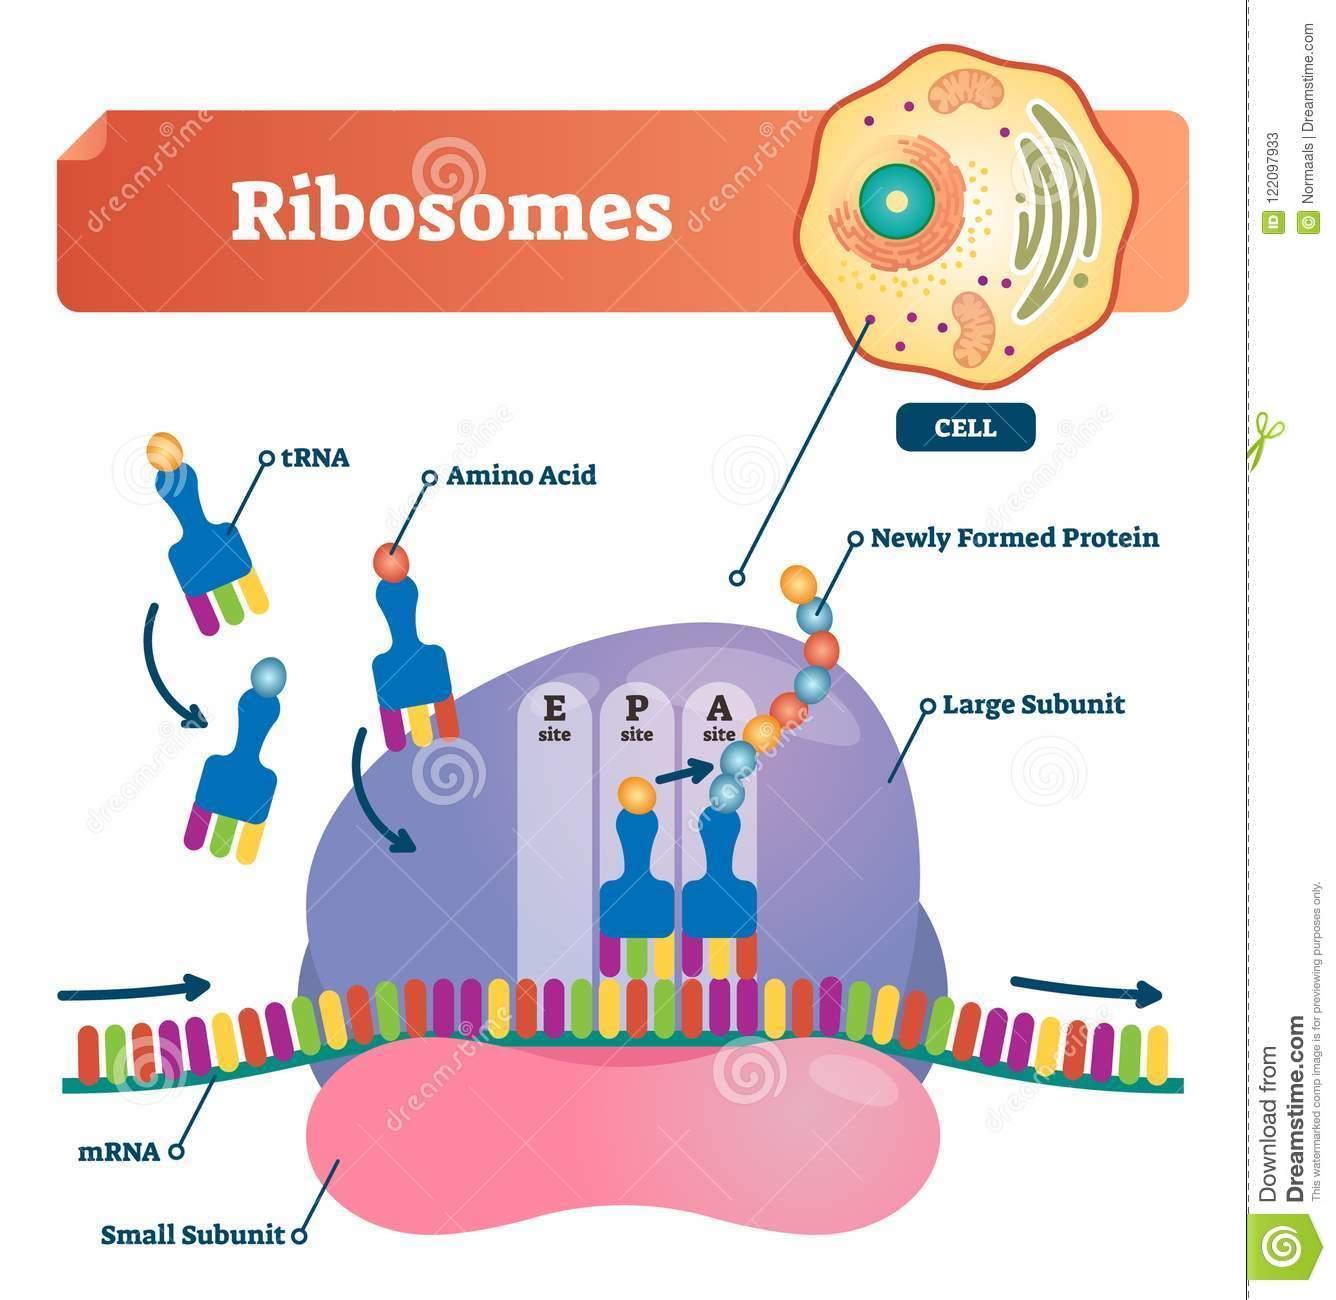 每日一词:核糖体 (ribosomes)